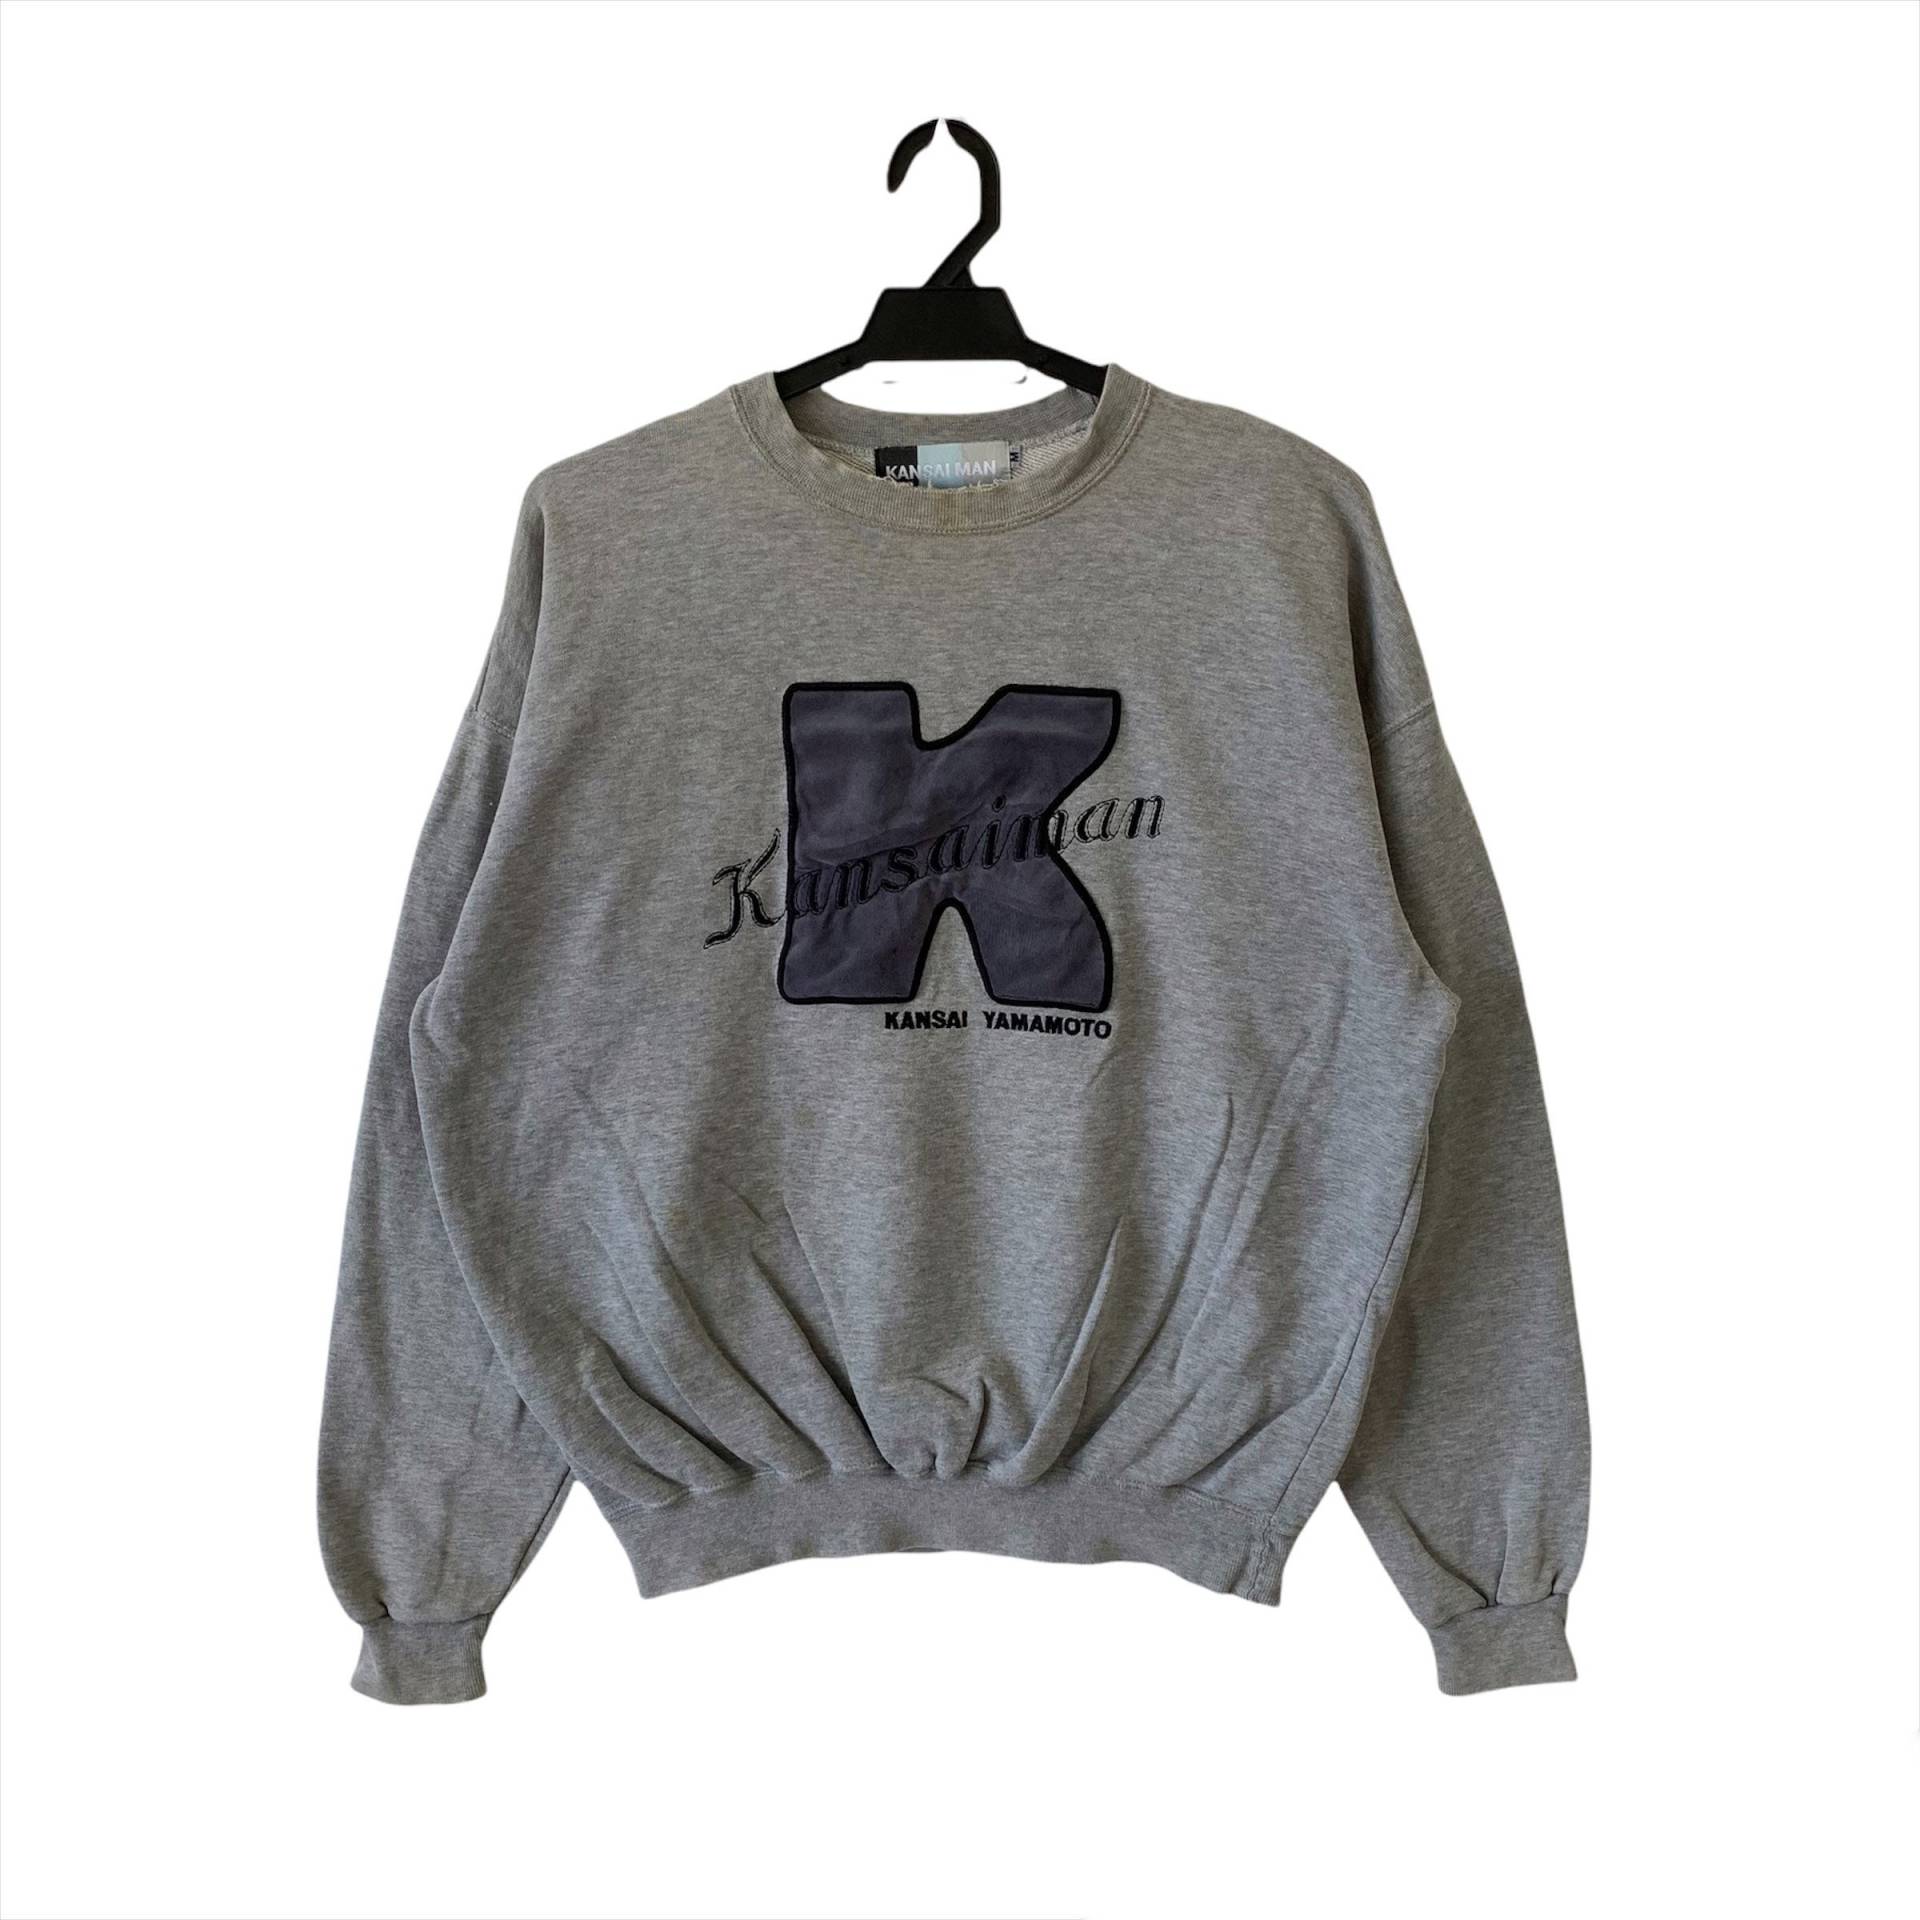 Vintage Kansaiman Kansai Yamamoto Crewneck Sweatshirt Größe M von 43VintageArt